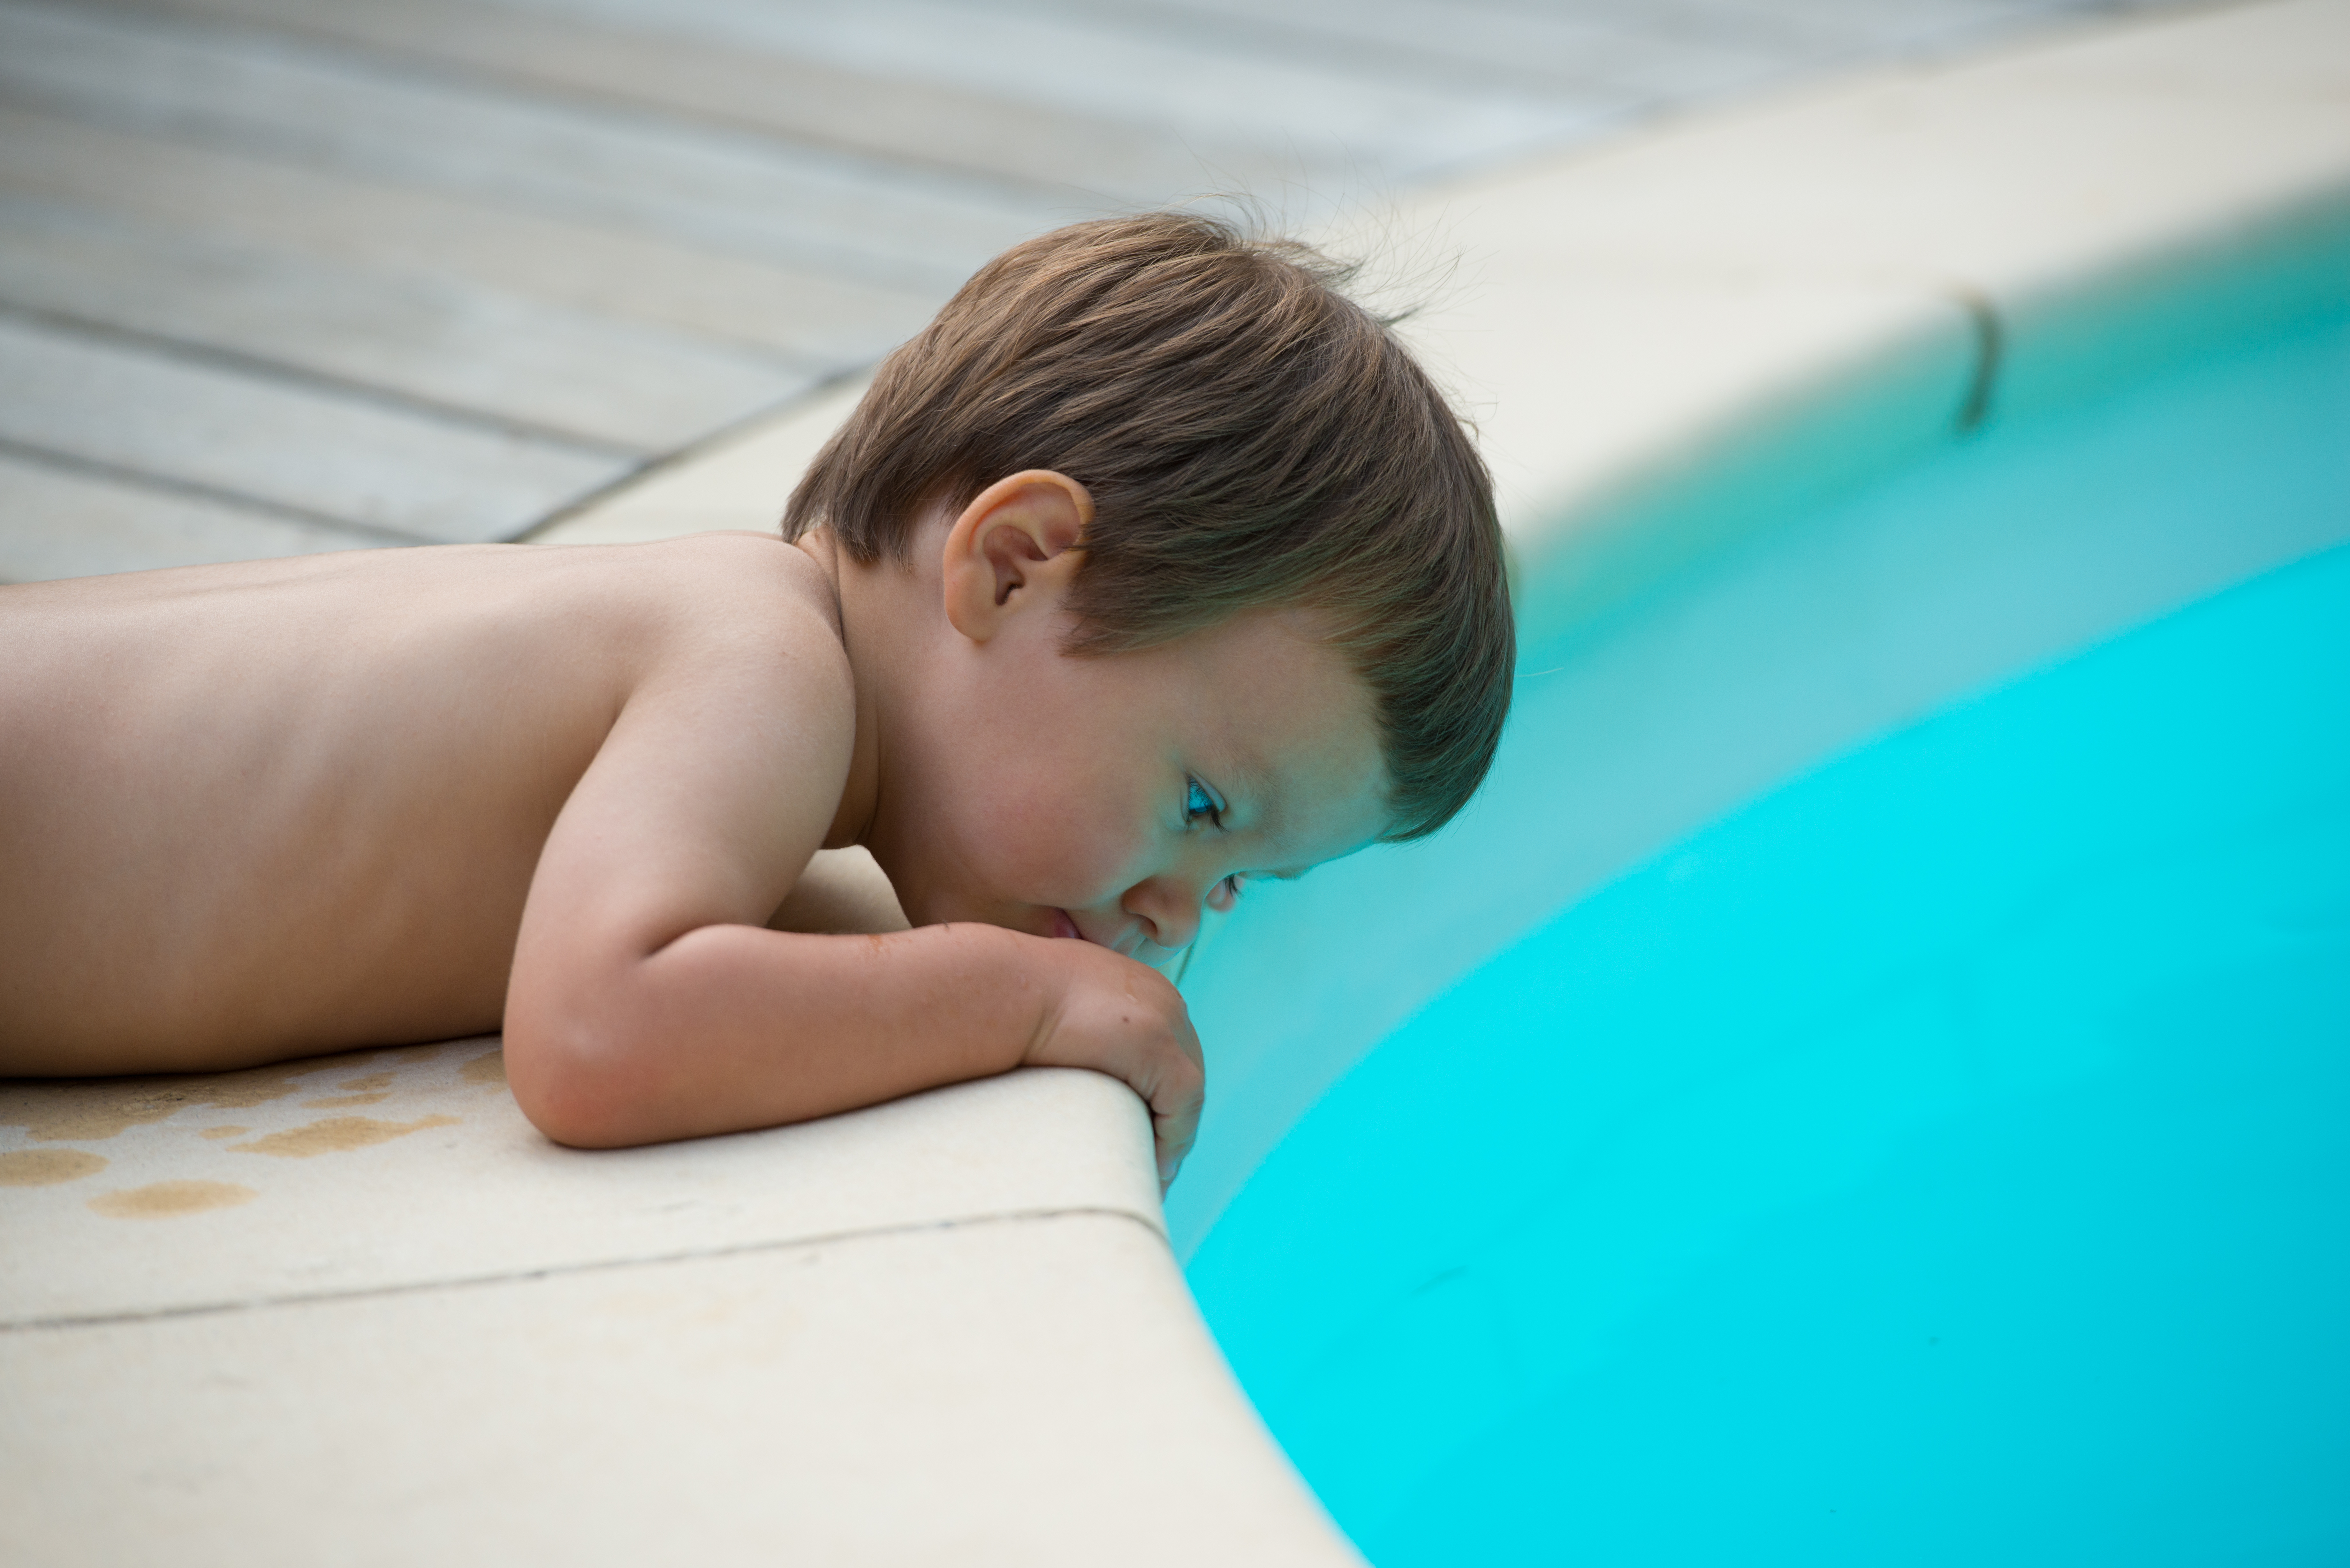 Température, sécurité Le point sur les piscines pour bébé